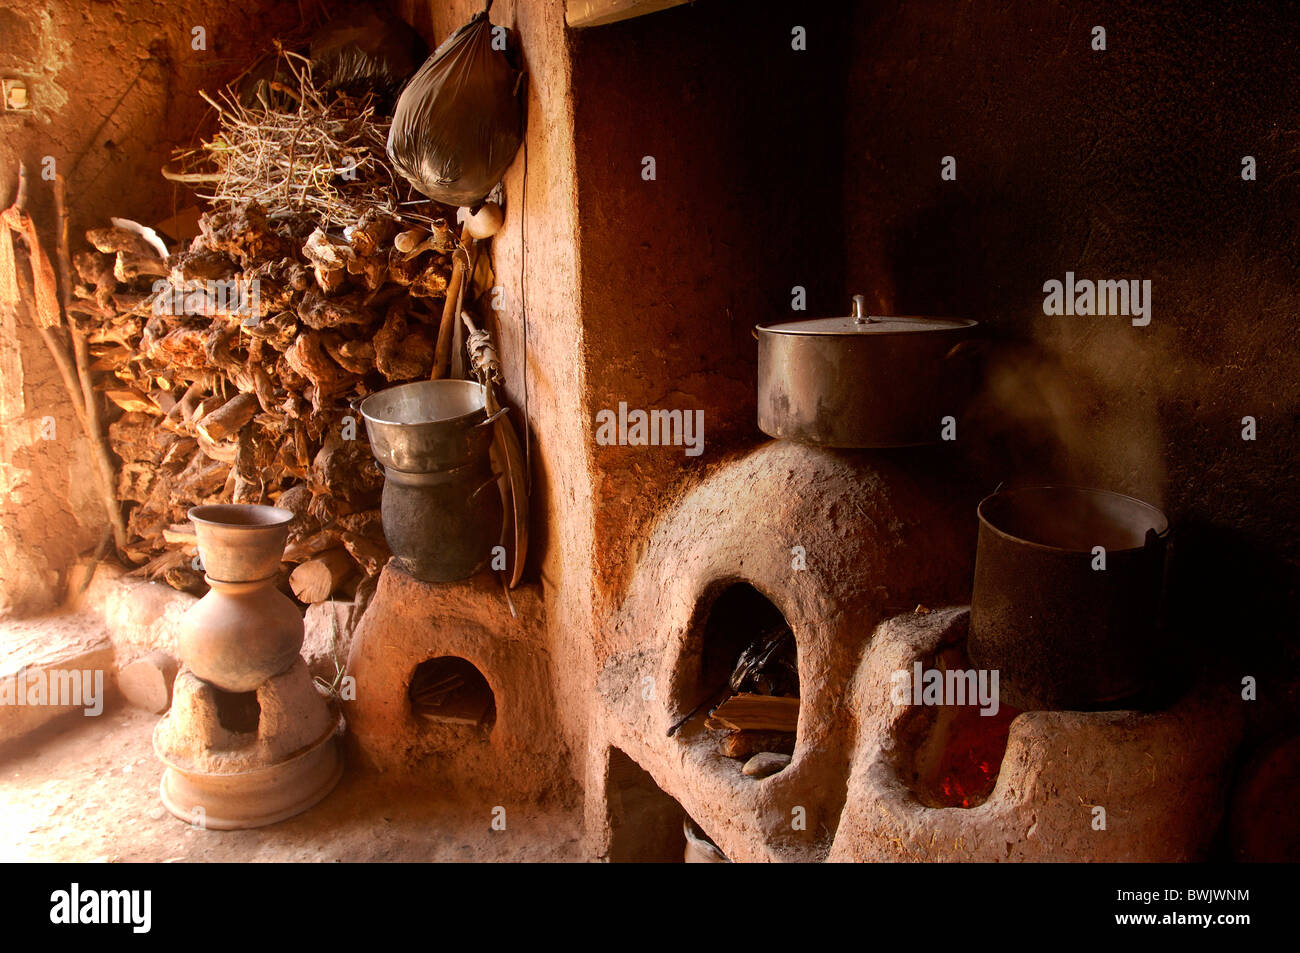 Casa bereber en el interior del equipo institución cocina cocina cocina ollas de barro hirviendo leña madera F Foto de stock